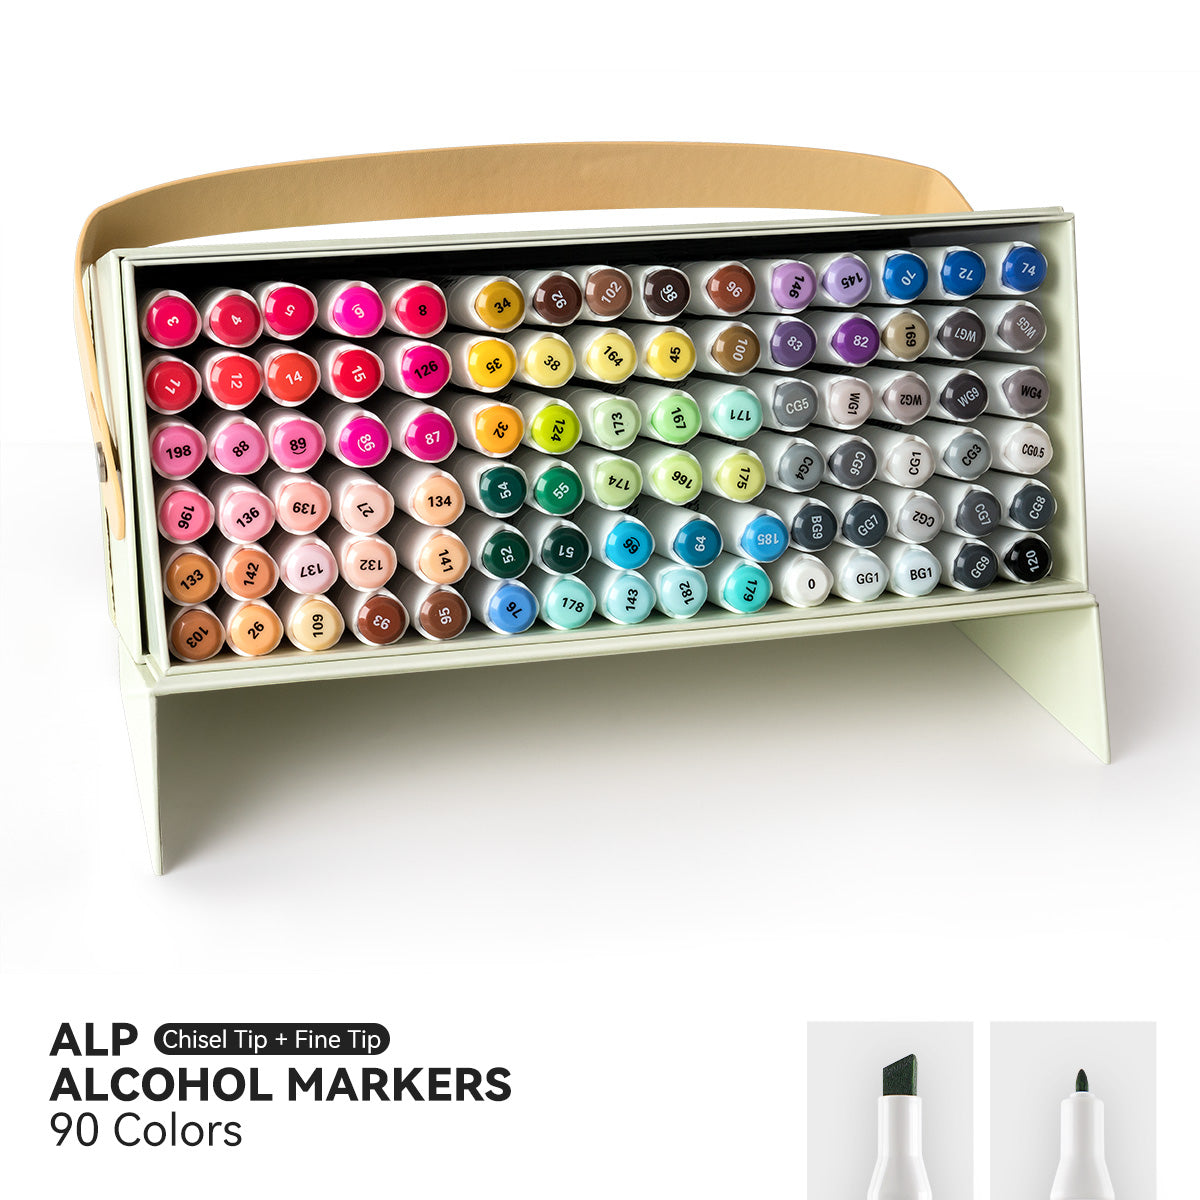 Arrtx ALP 90 Colors Alcohol Markers Paint Pen Set